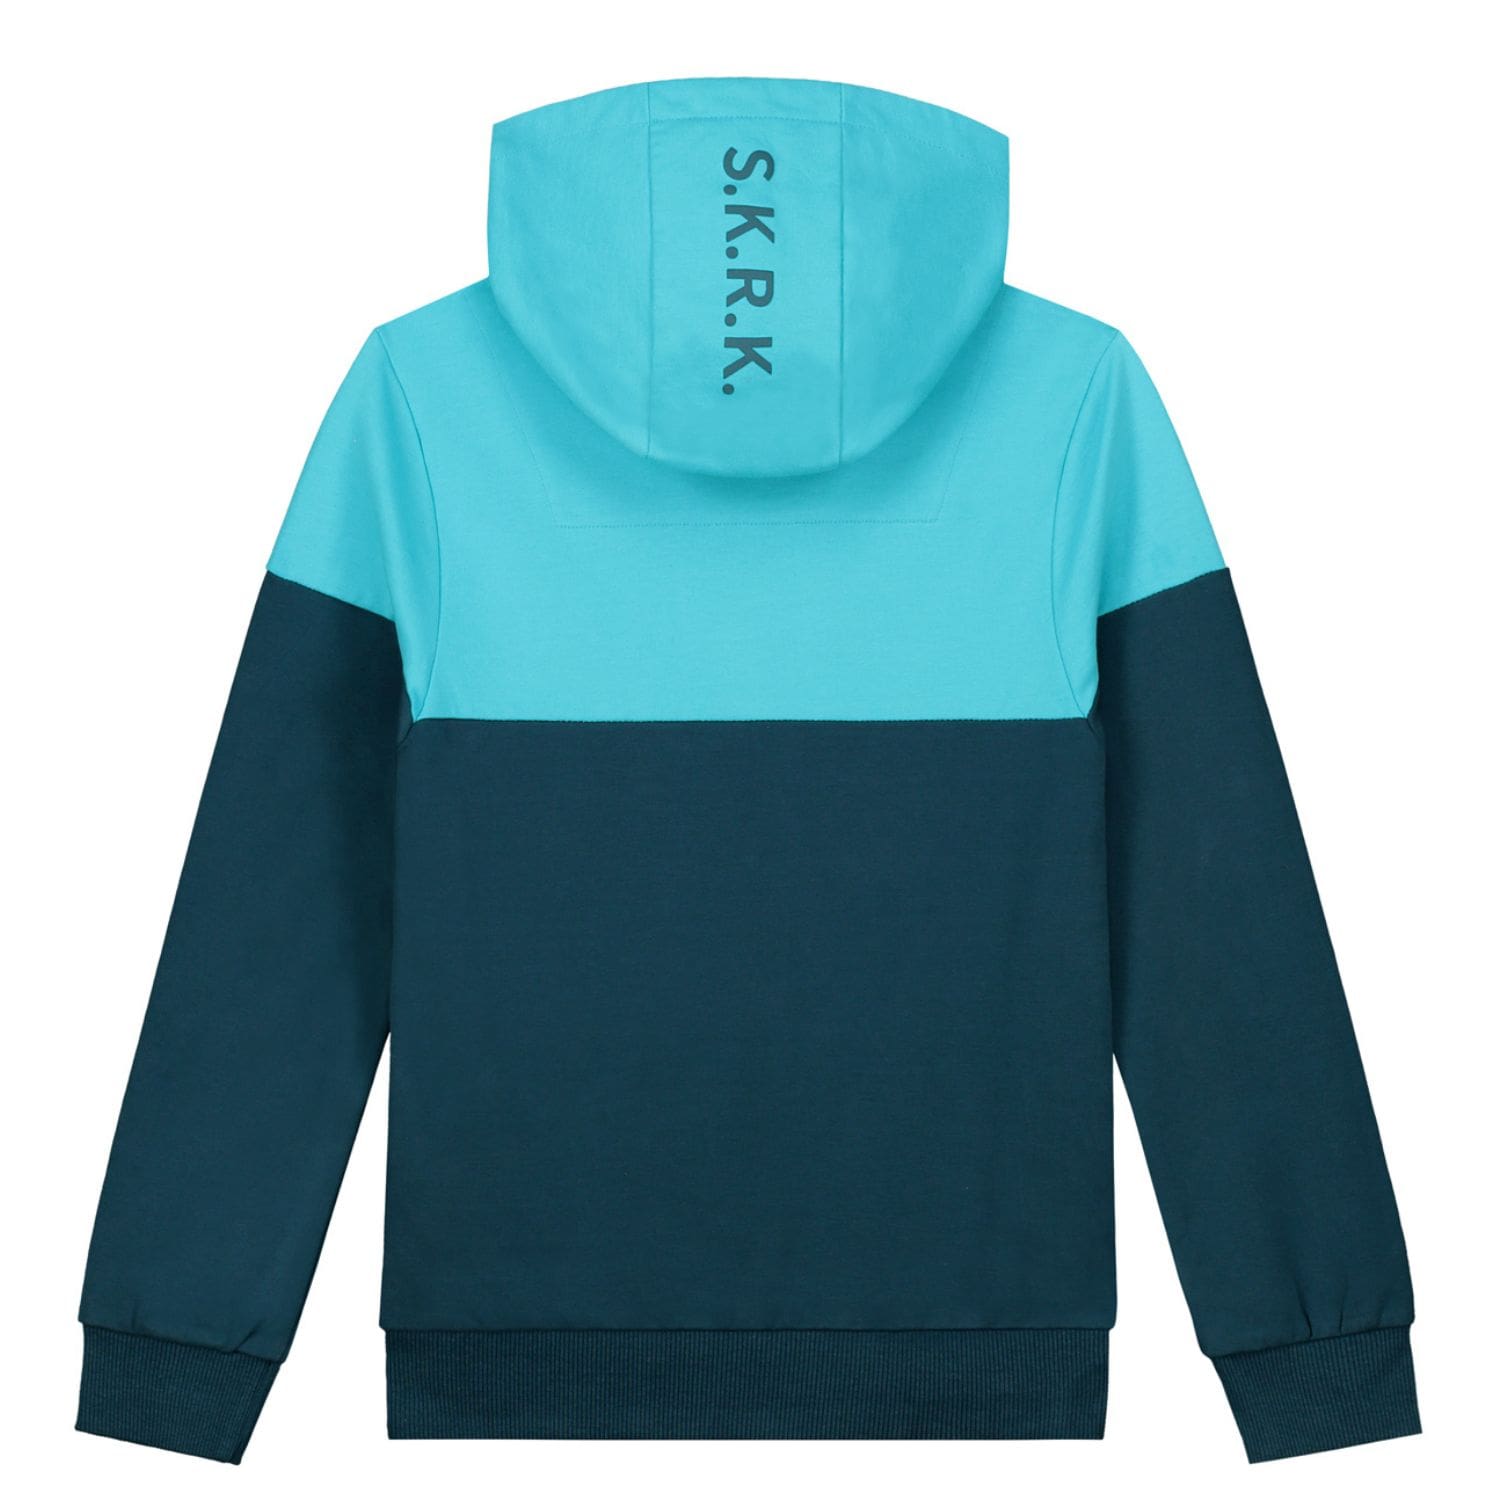 SKURK Jongens Hoodie Sweater Blauw